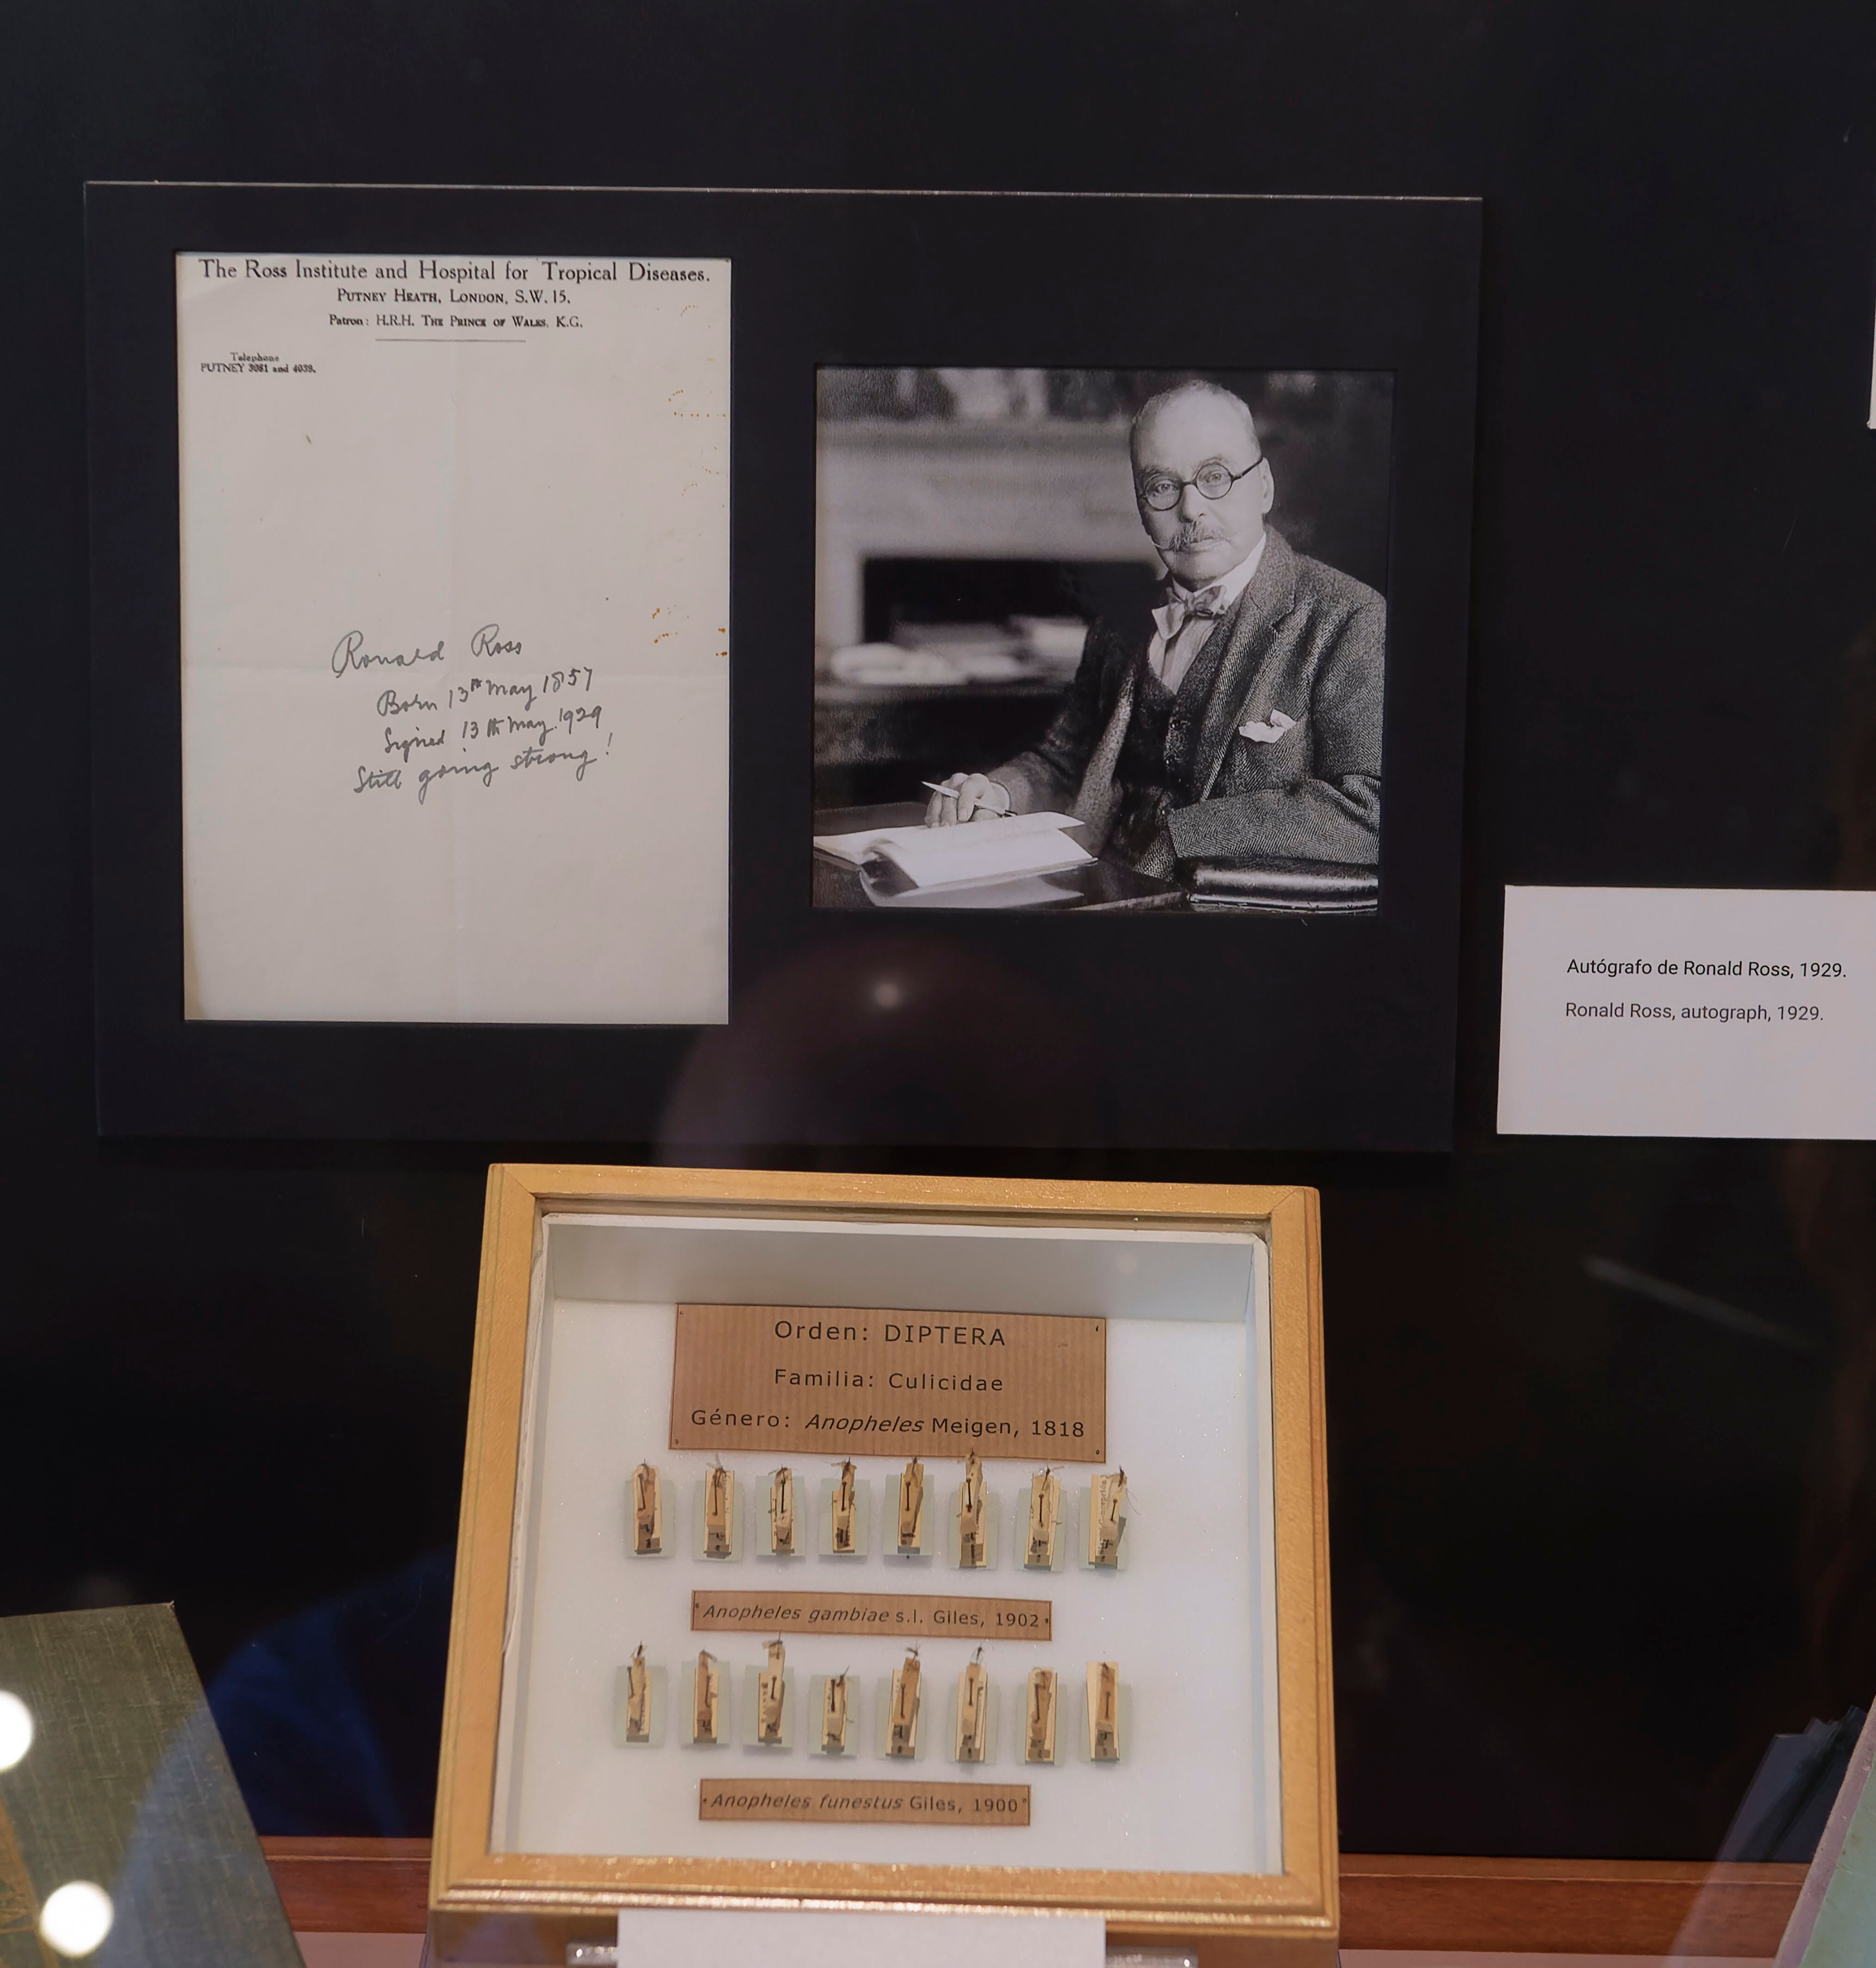 Autógrafo del Premio Nobel Ronald Ross, 1929, quien relacionó la malaria con los mosquitos.